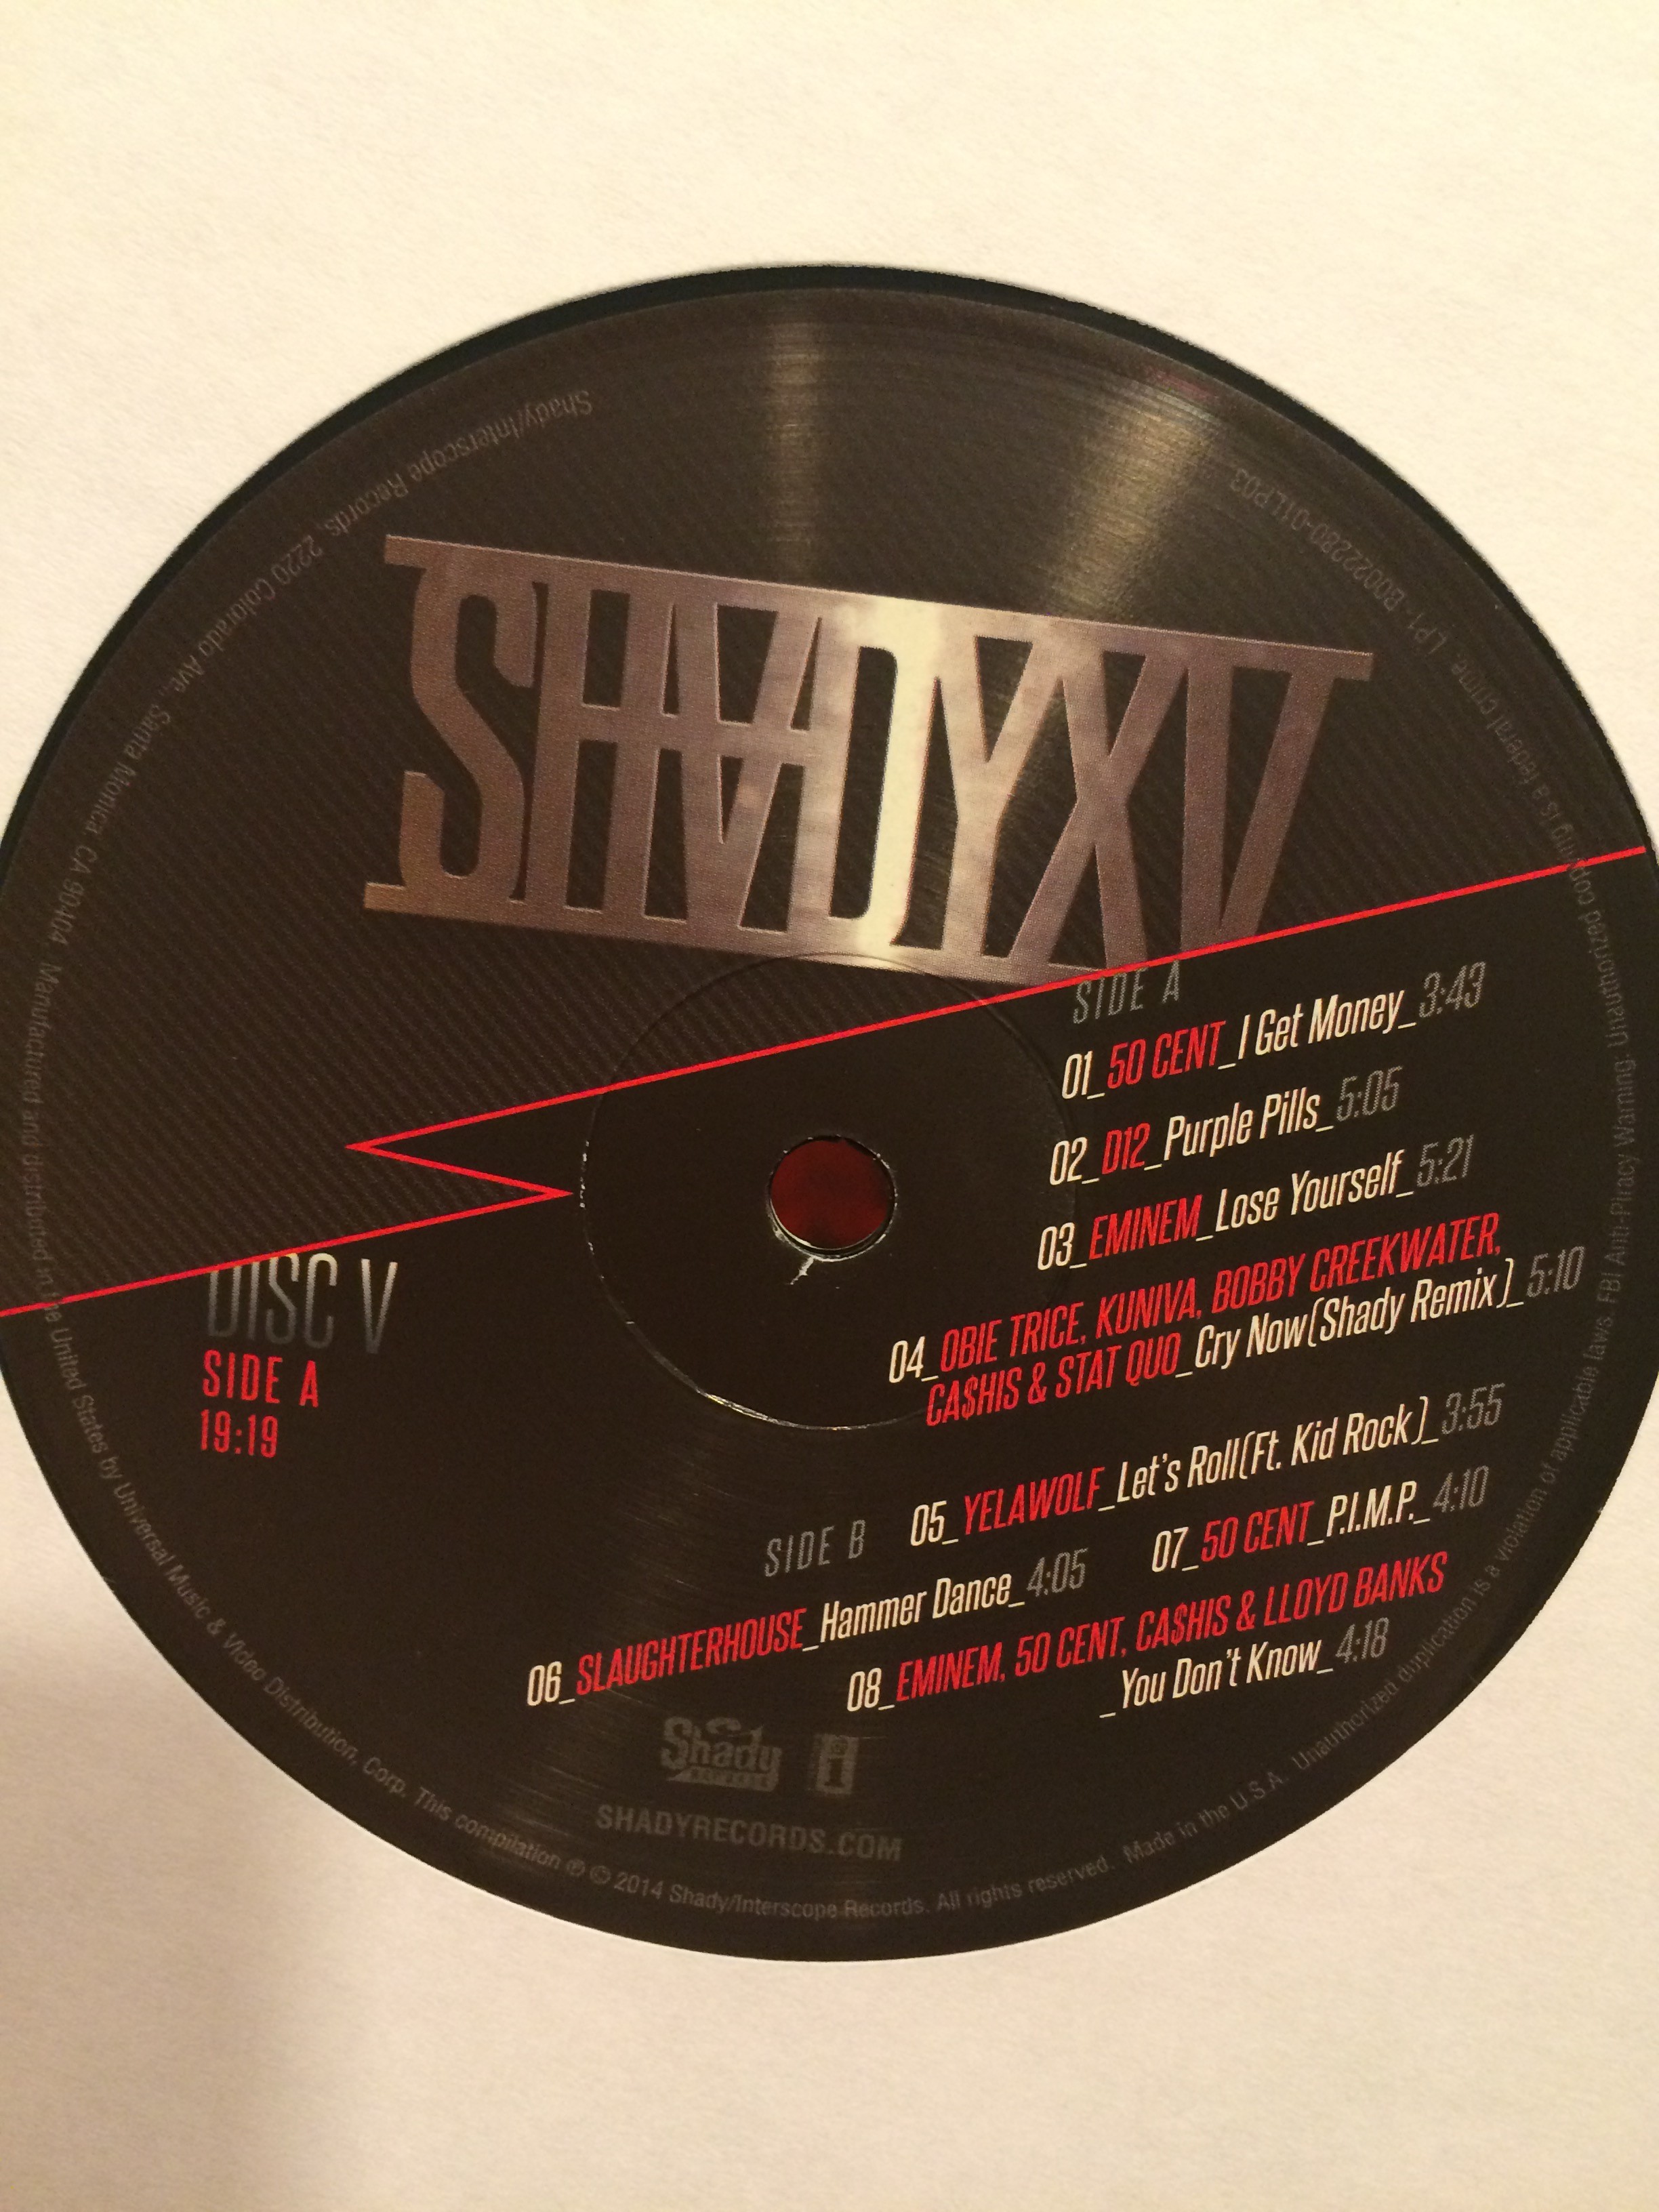 SHADYXV Vinyl by Eminem.PRO Eminem Shady Records. Photo by Igor Basenko